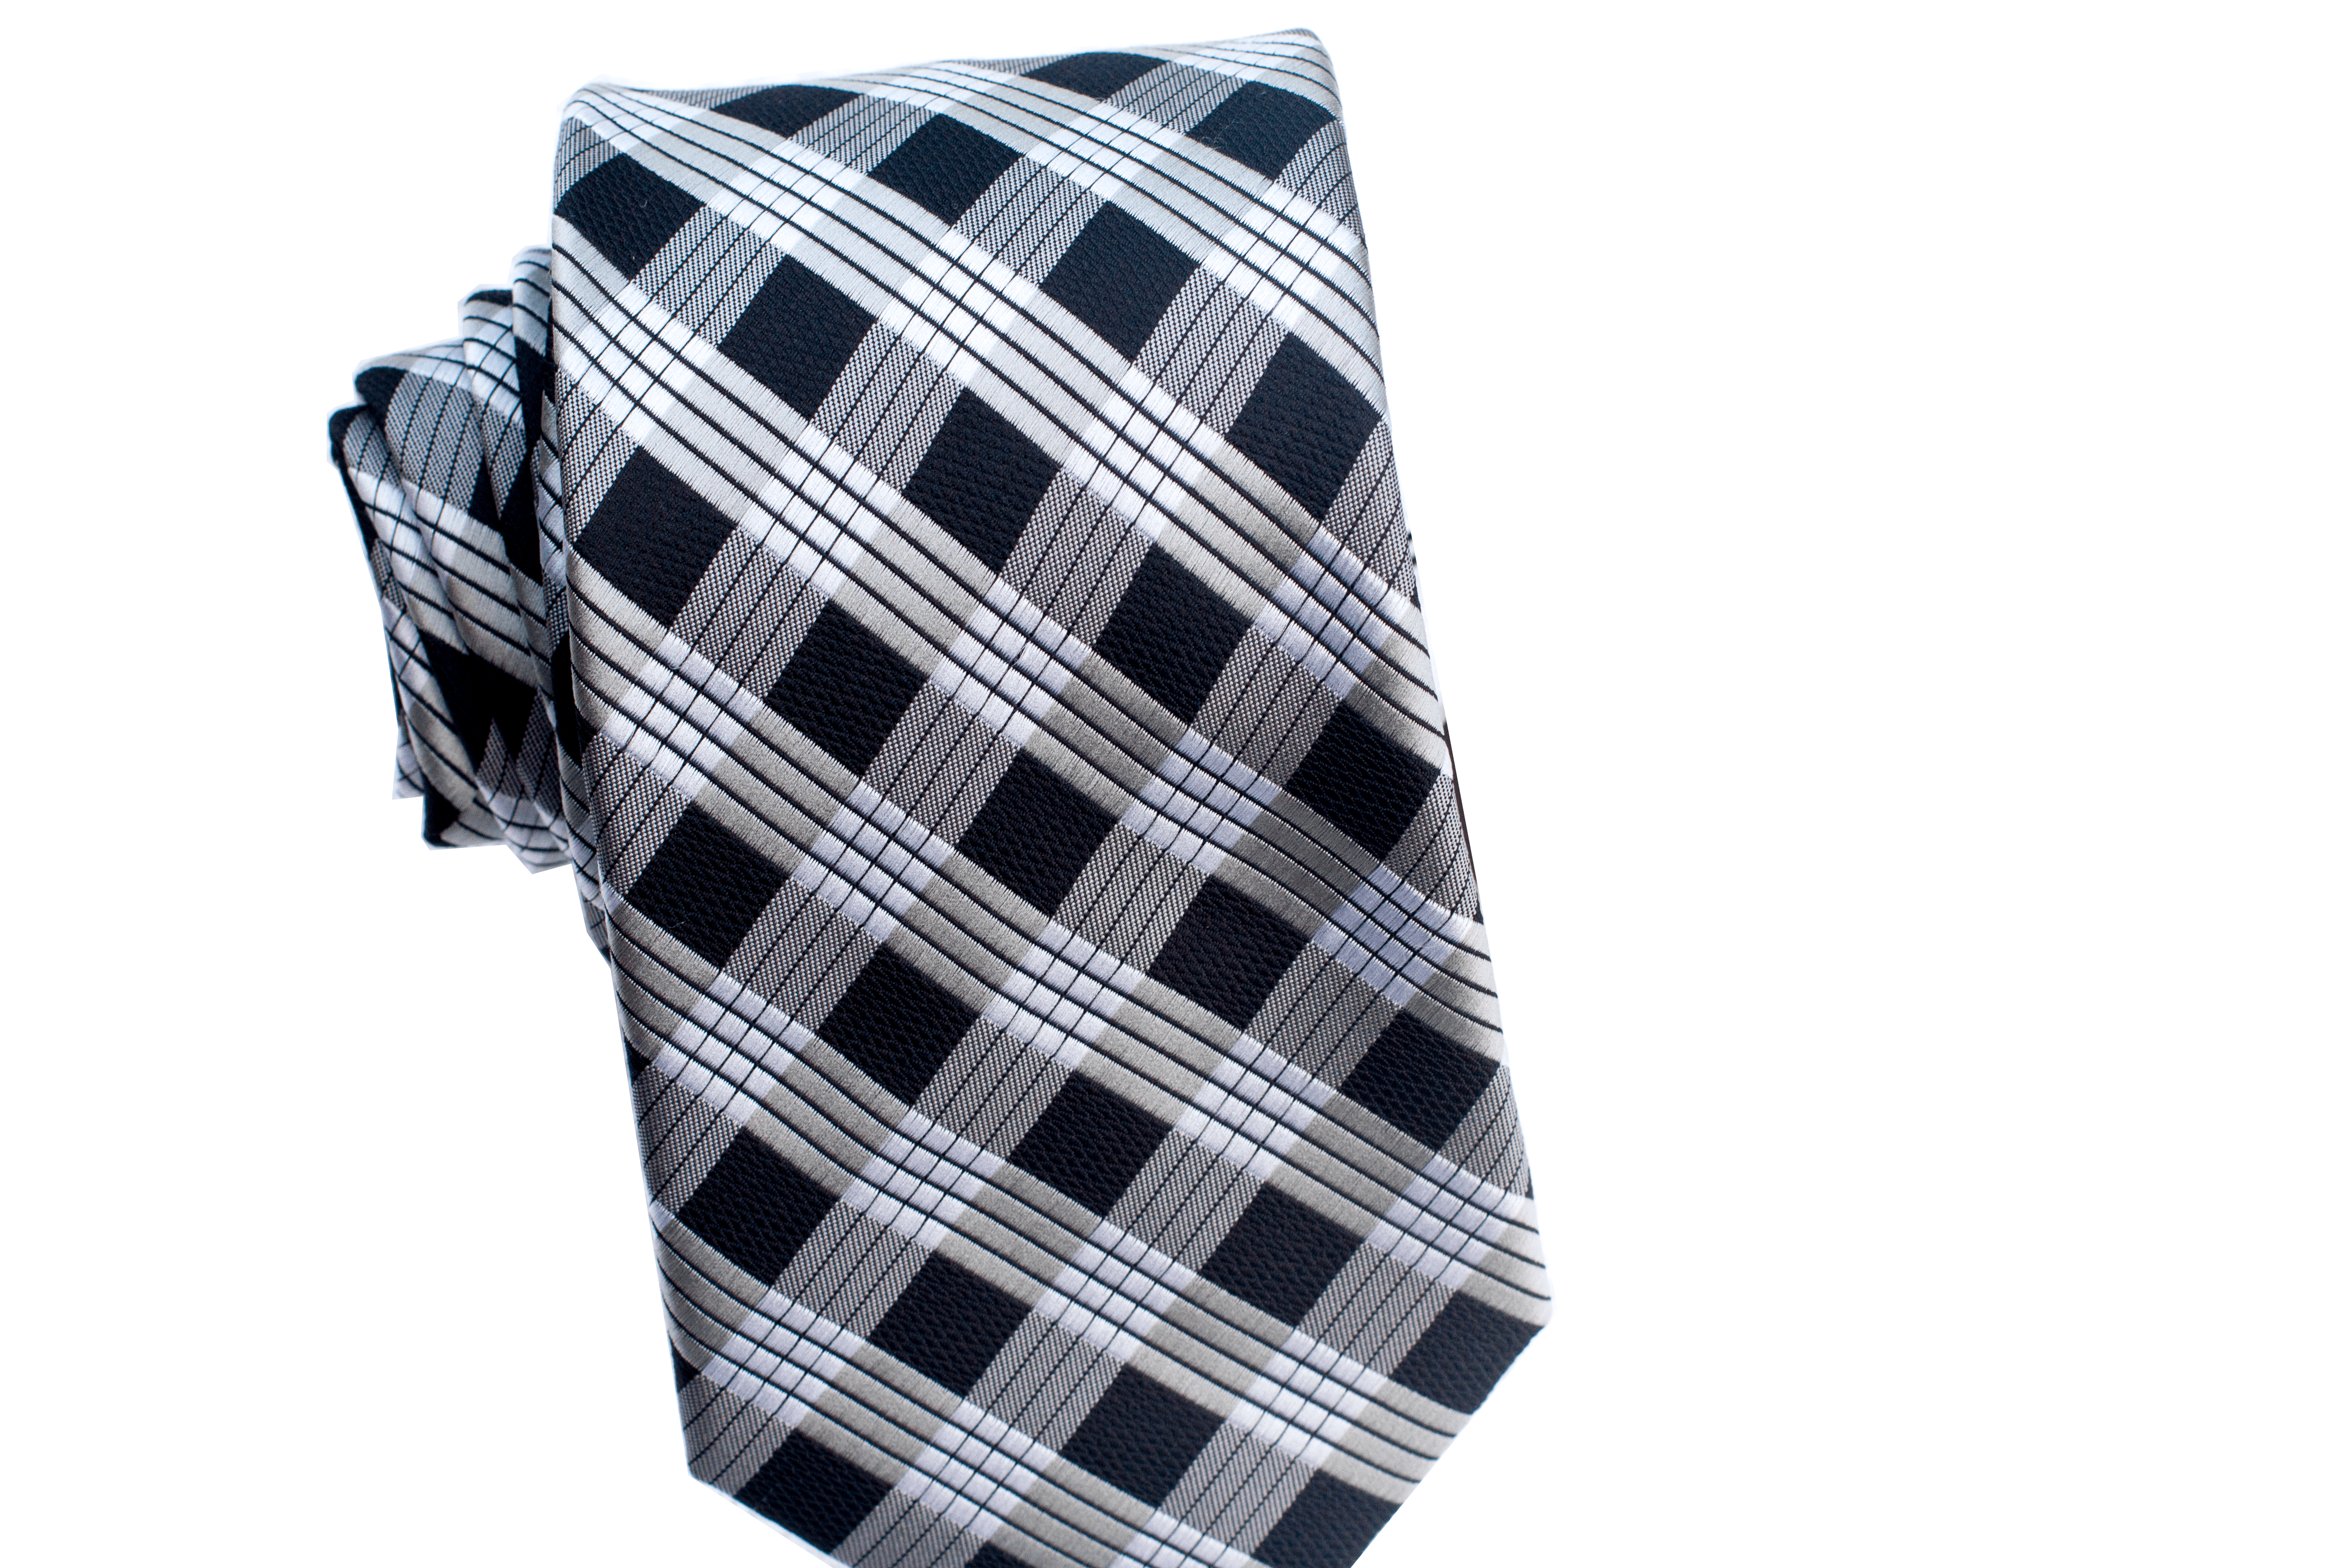 Palaka Black Modern Necktie